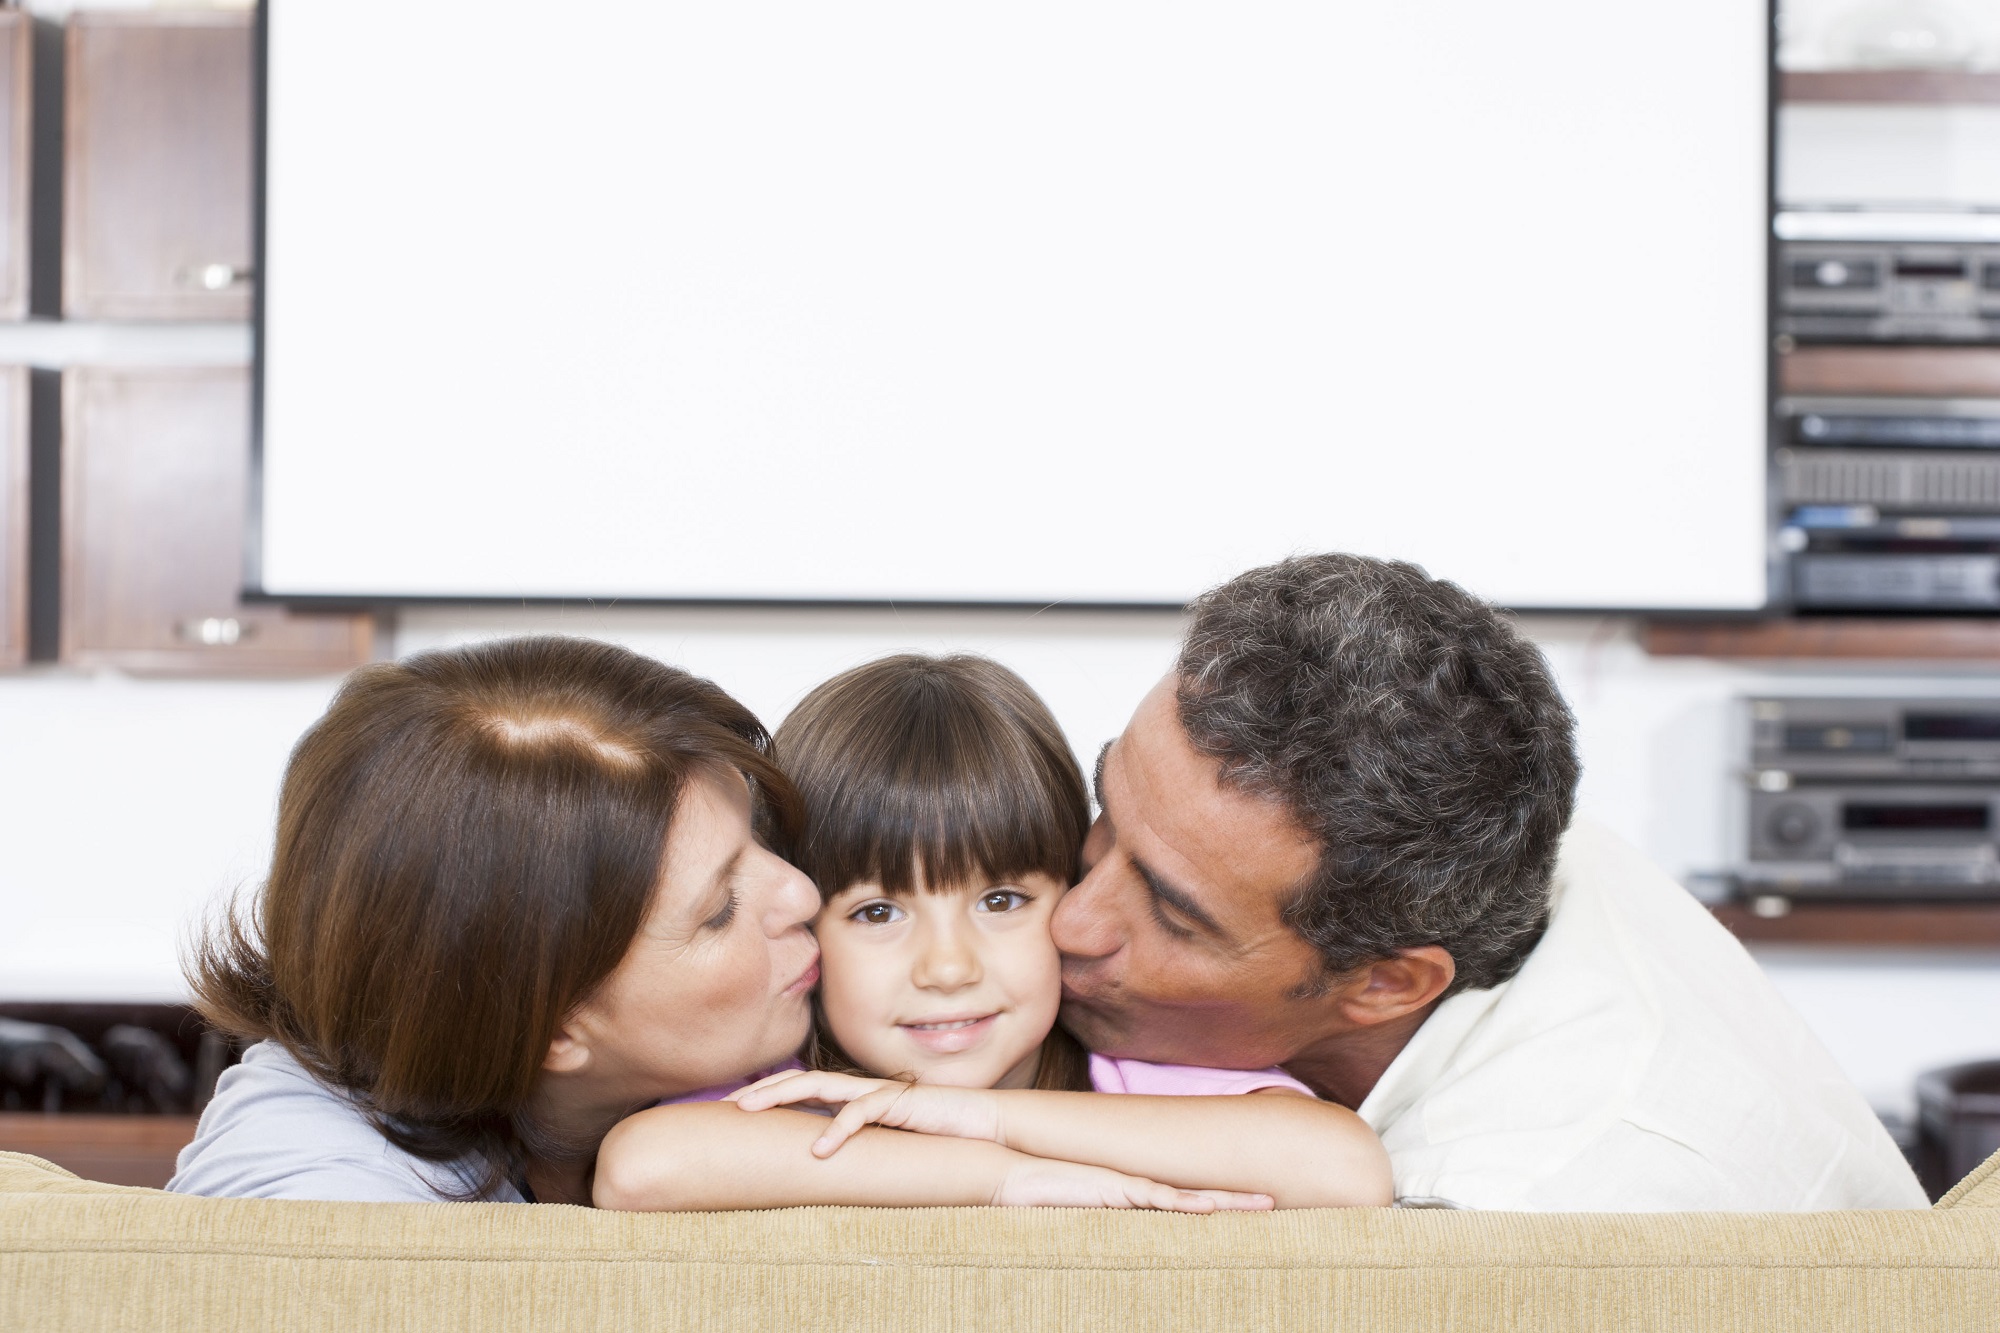 Gsk Italia: “Sostegno a genitorialità condivisa e assistenza familiare”